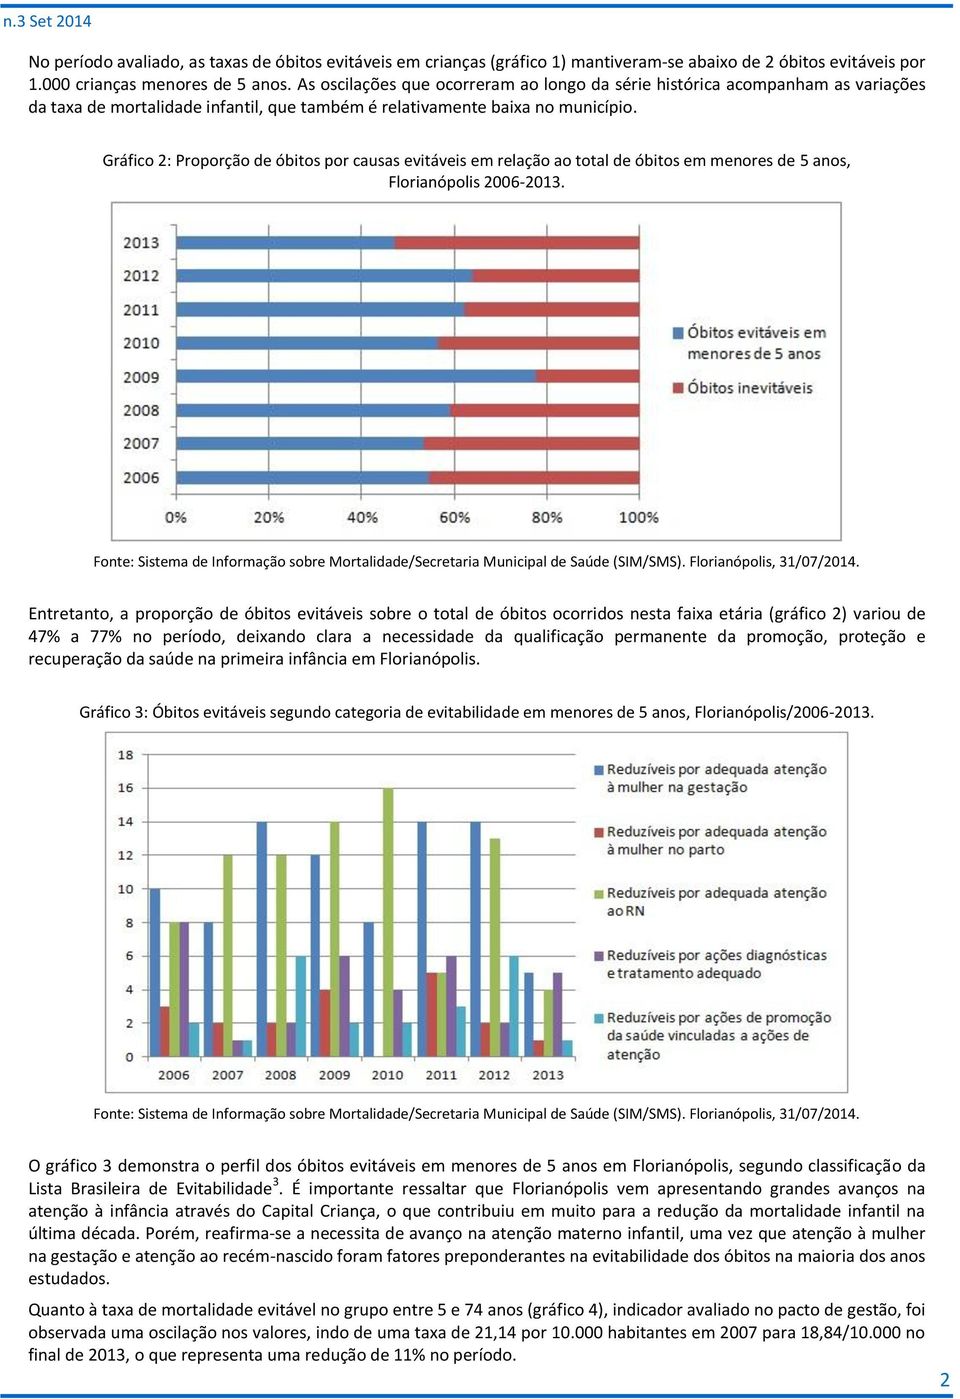 Gráfico 2: Proporção de óbitos por causas evitáveis em relação ao total de óbitos em menores de 5 anos, Florianópolis 2006-2013.